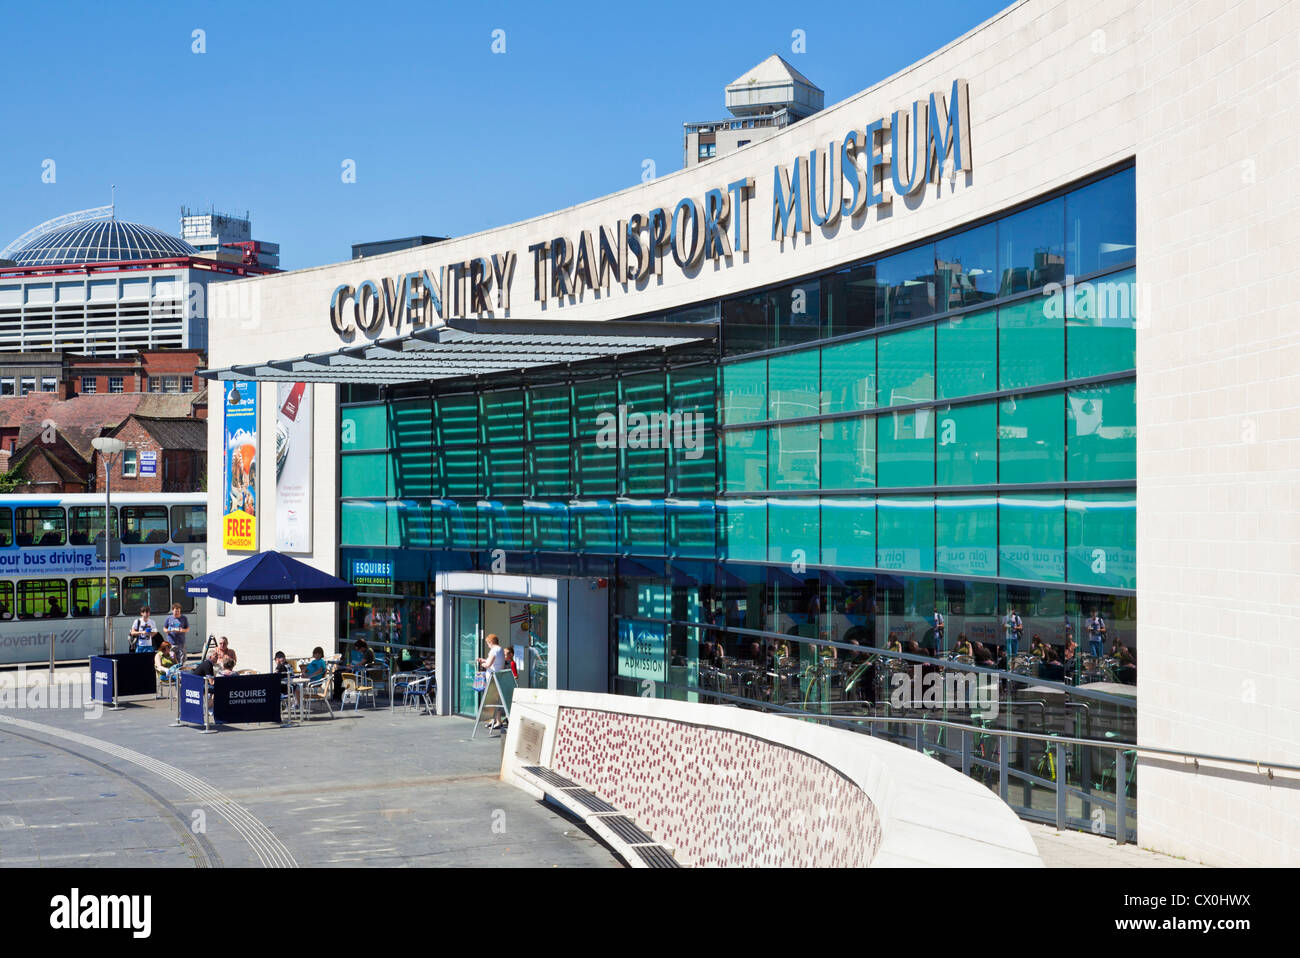 Coventry Transport Museum west Midlands England Regno unito Gb eu europe Foto Stock